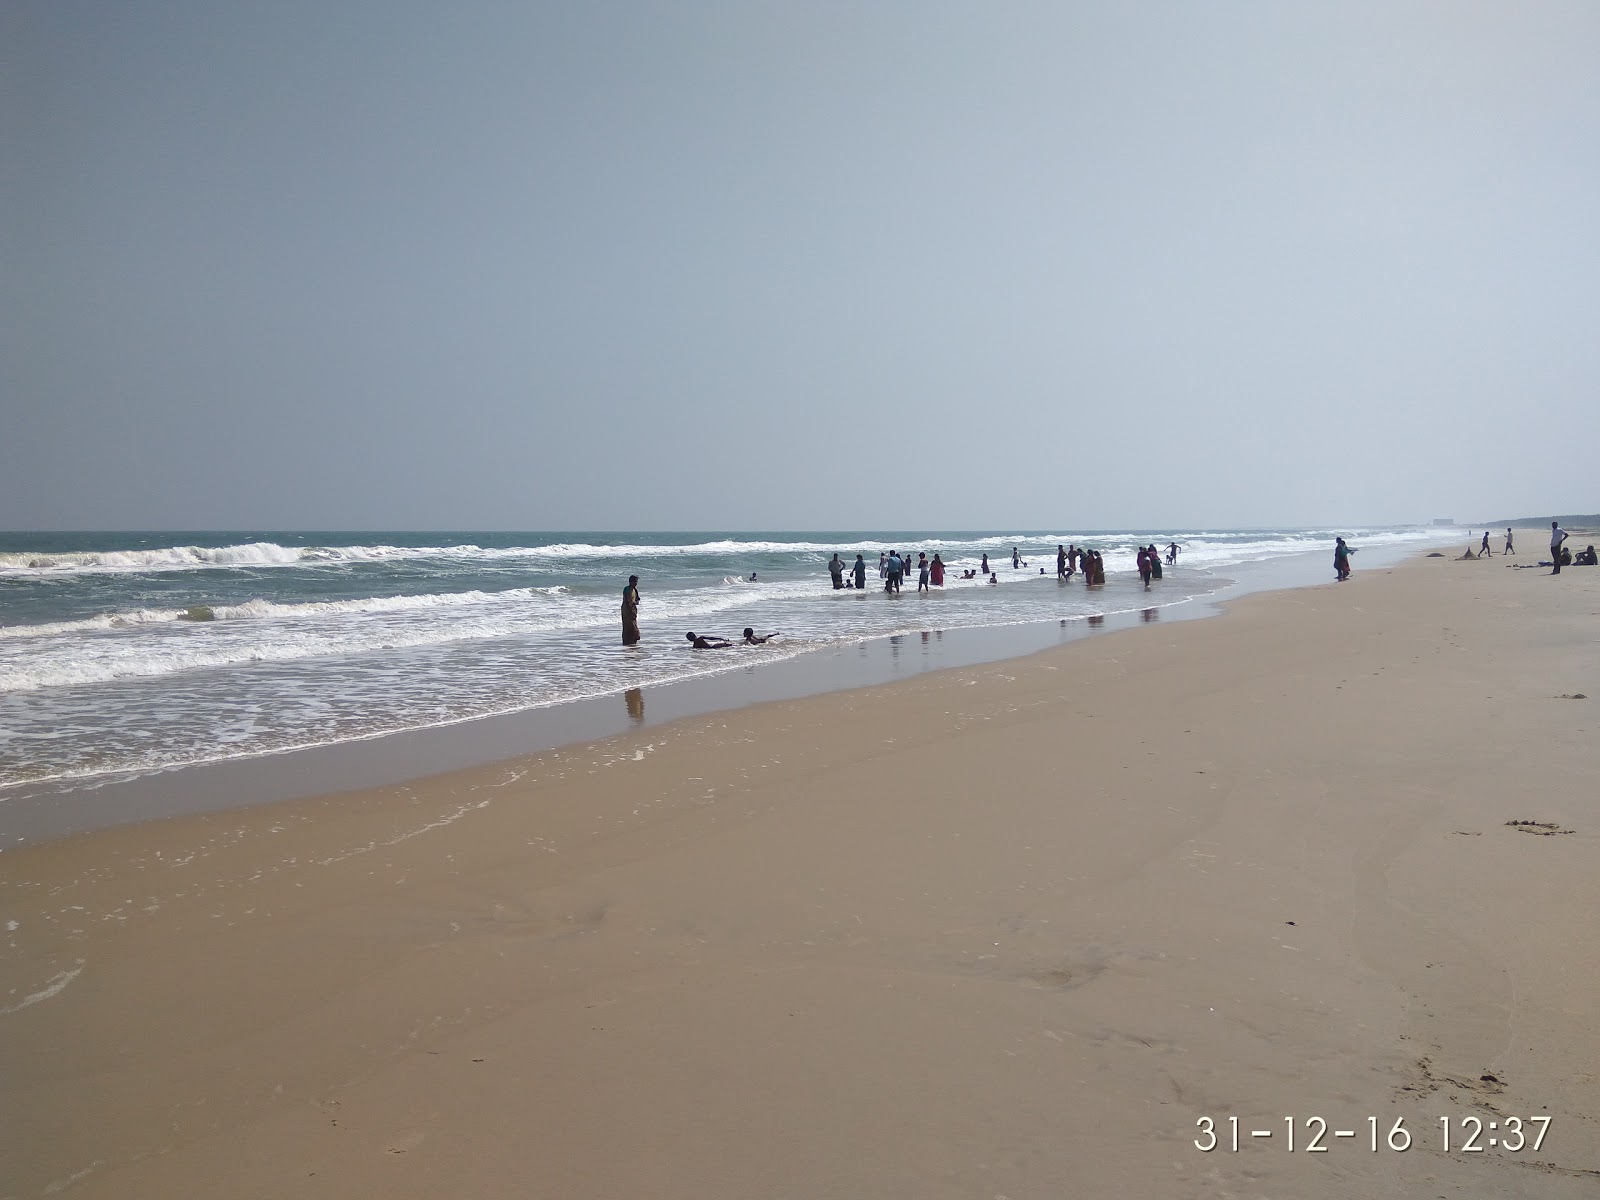 Samiyar Pettai Beach'in fotoğrafı parlak kum yüzey ile